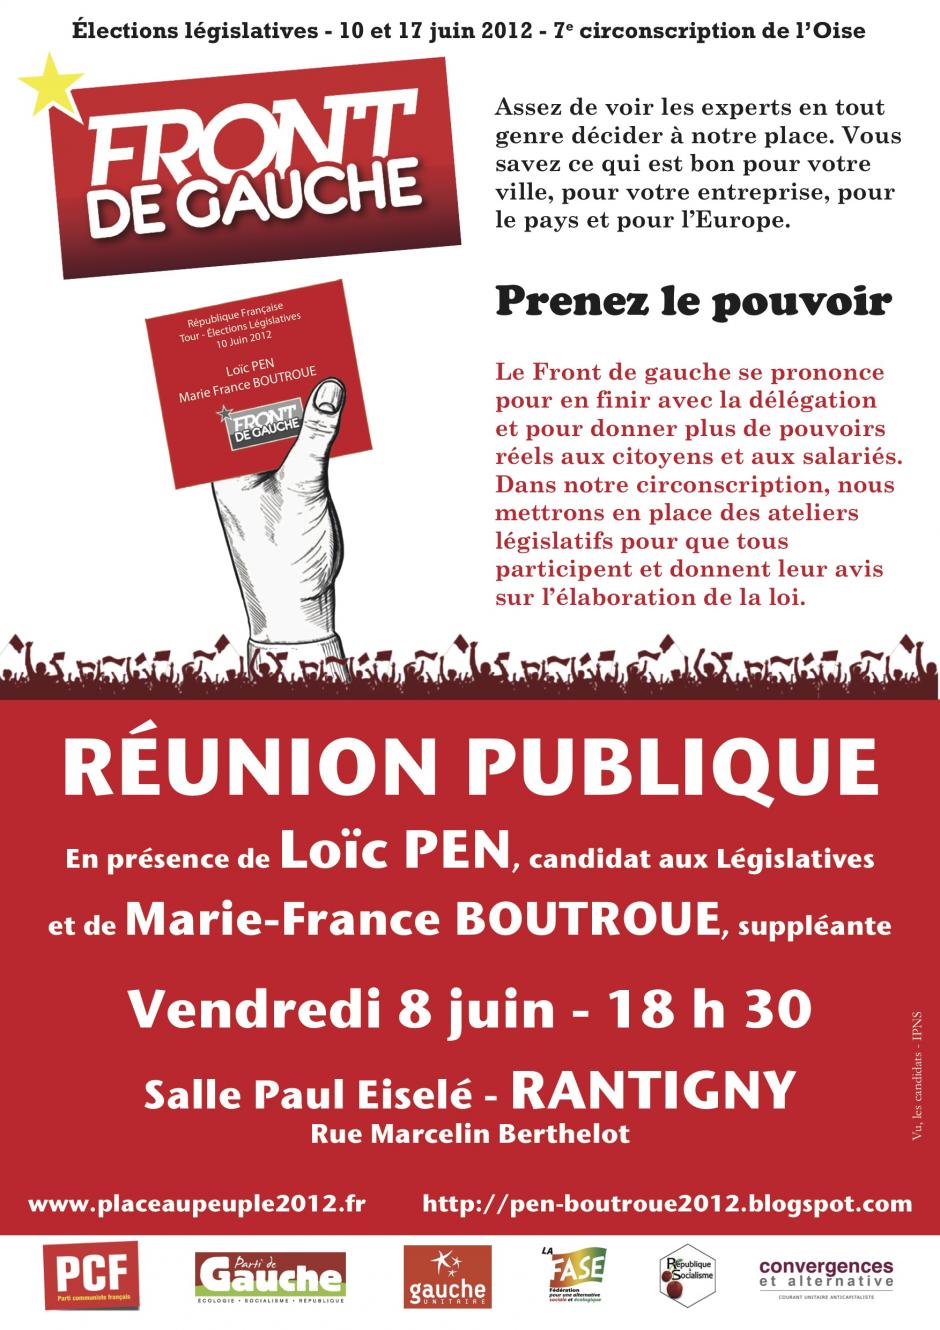 8 juin, Rantigny - Réunion publique du Front de gauche